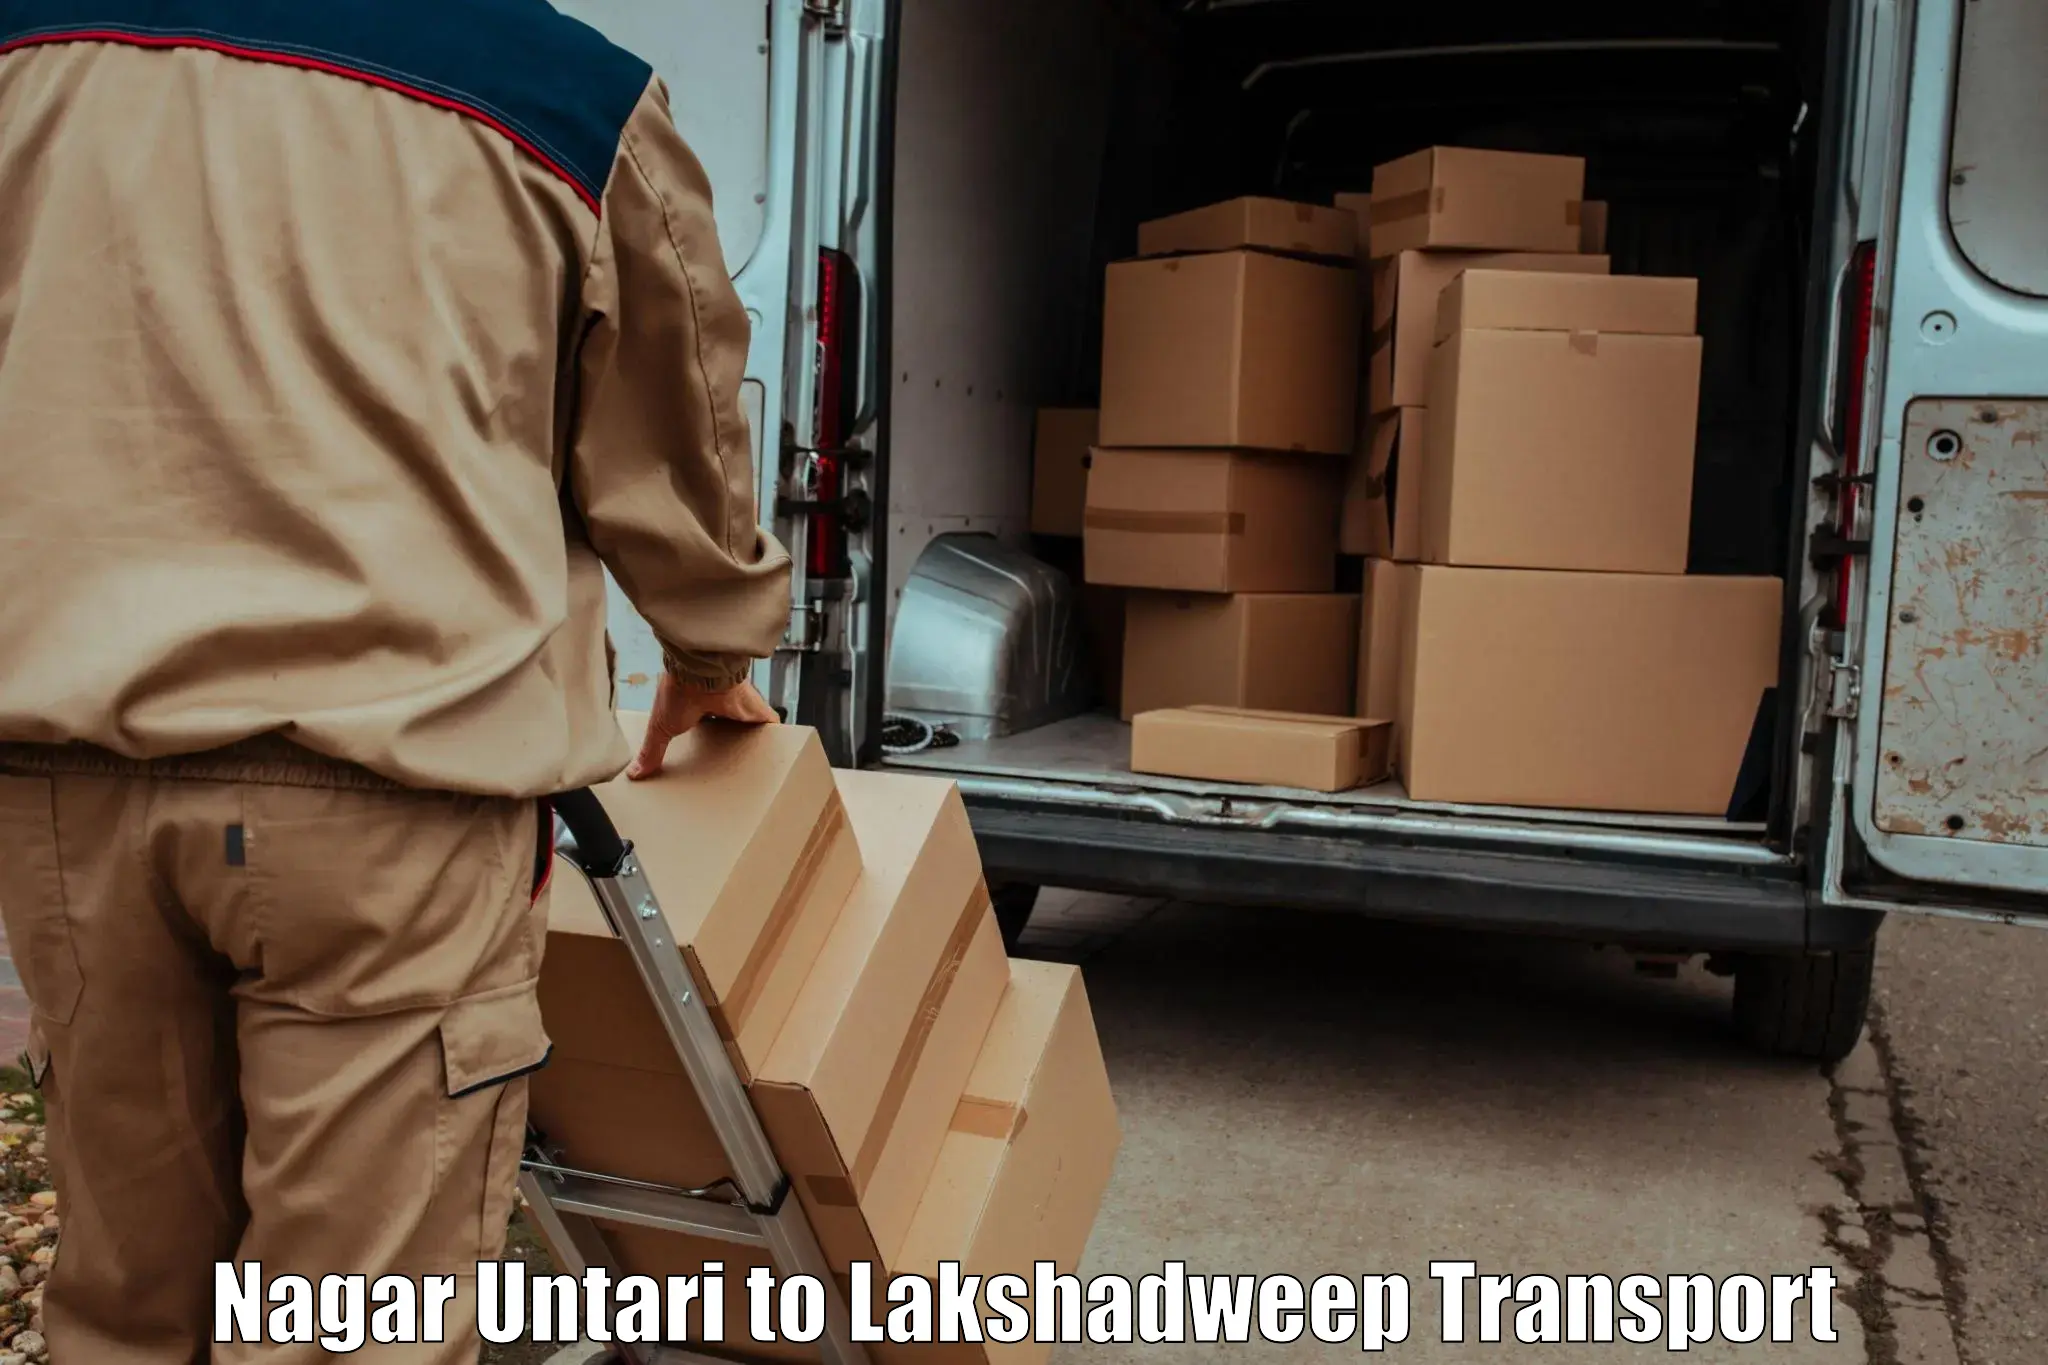 Furniture transport service Nagar Untari to Lakshadweep